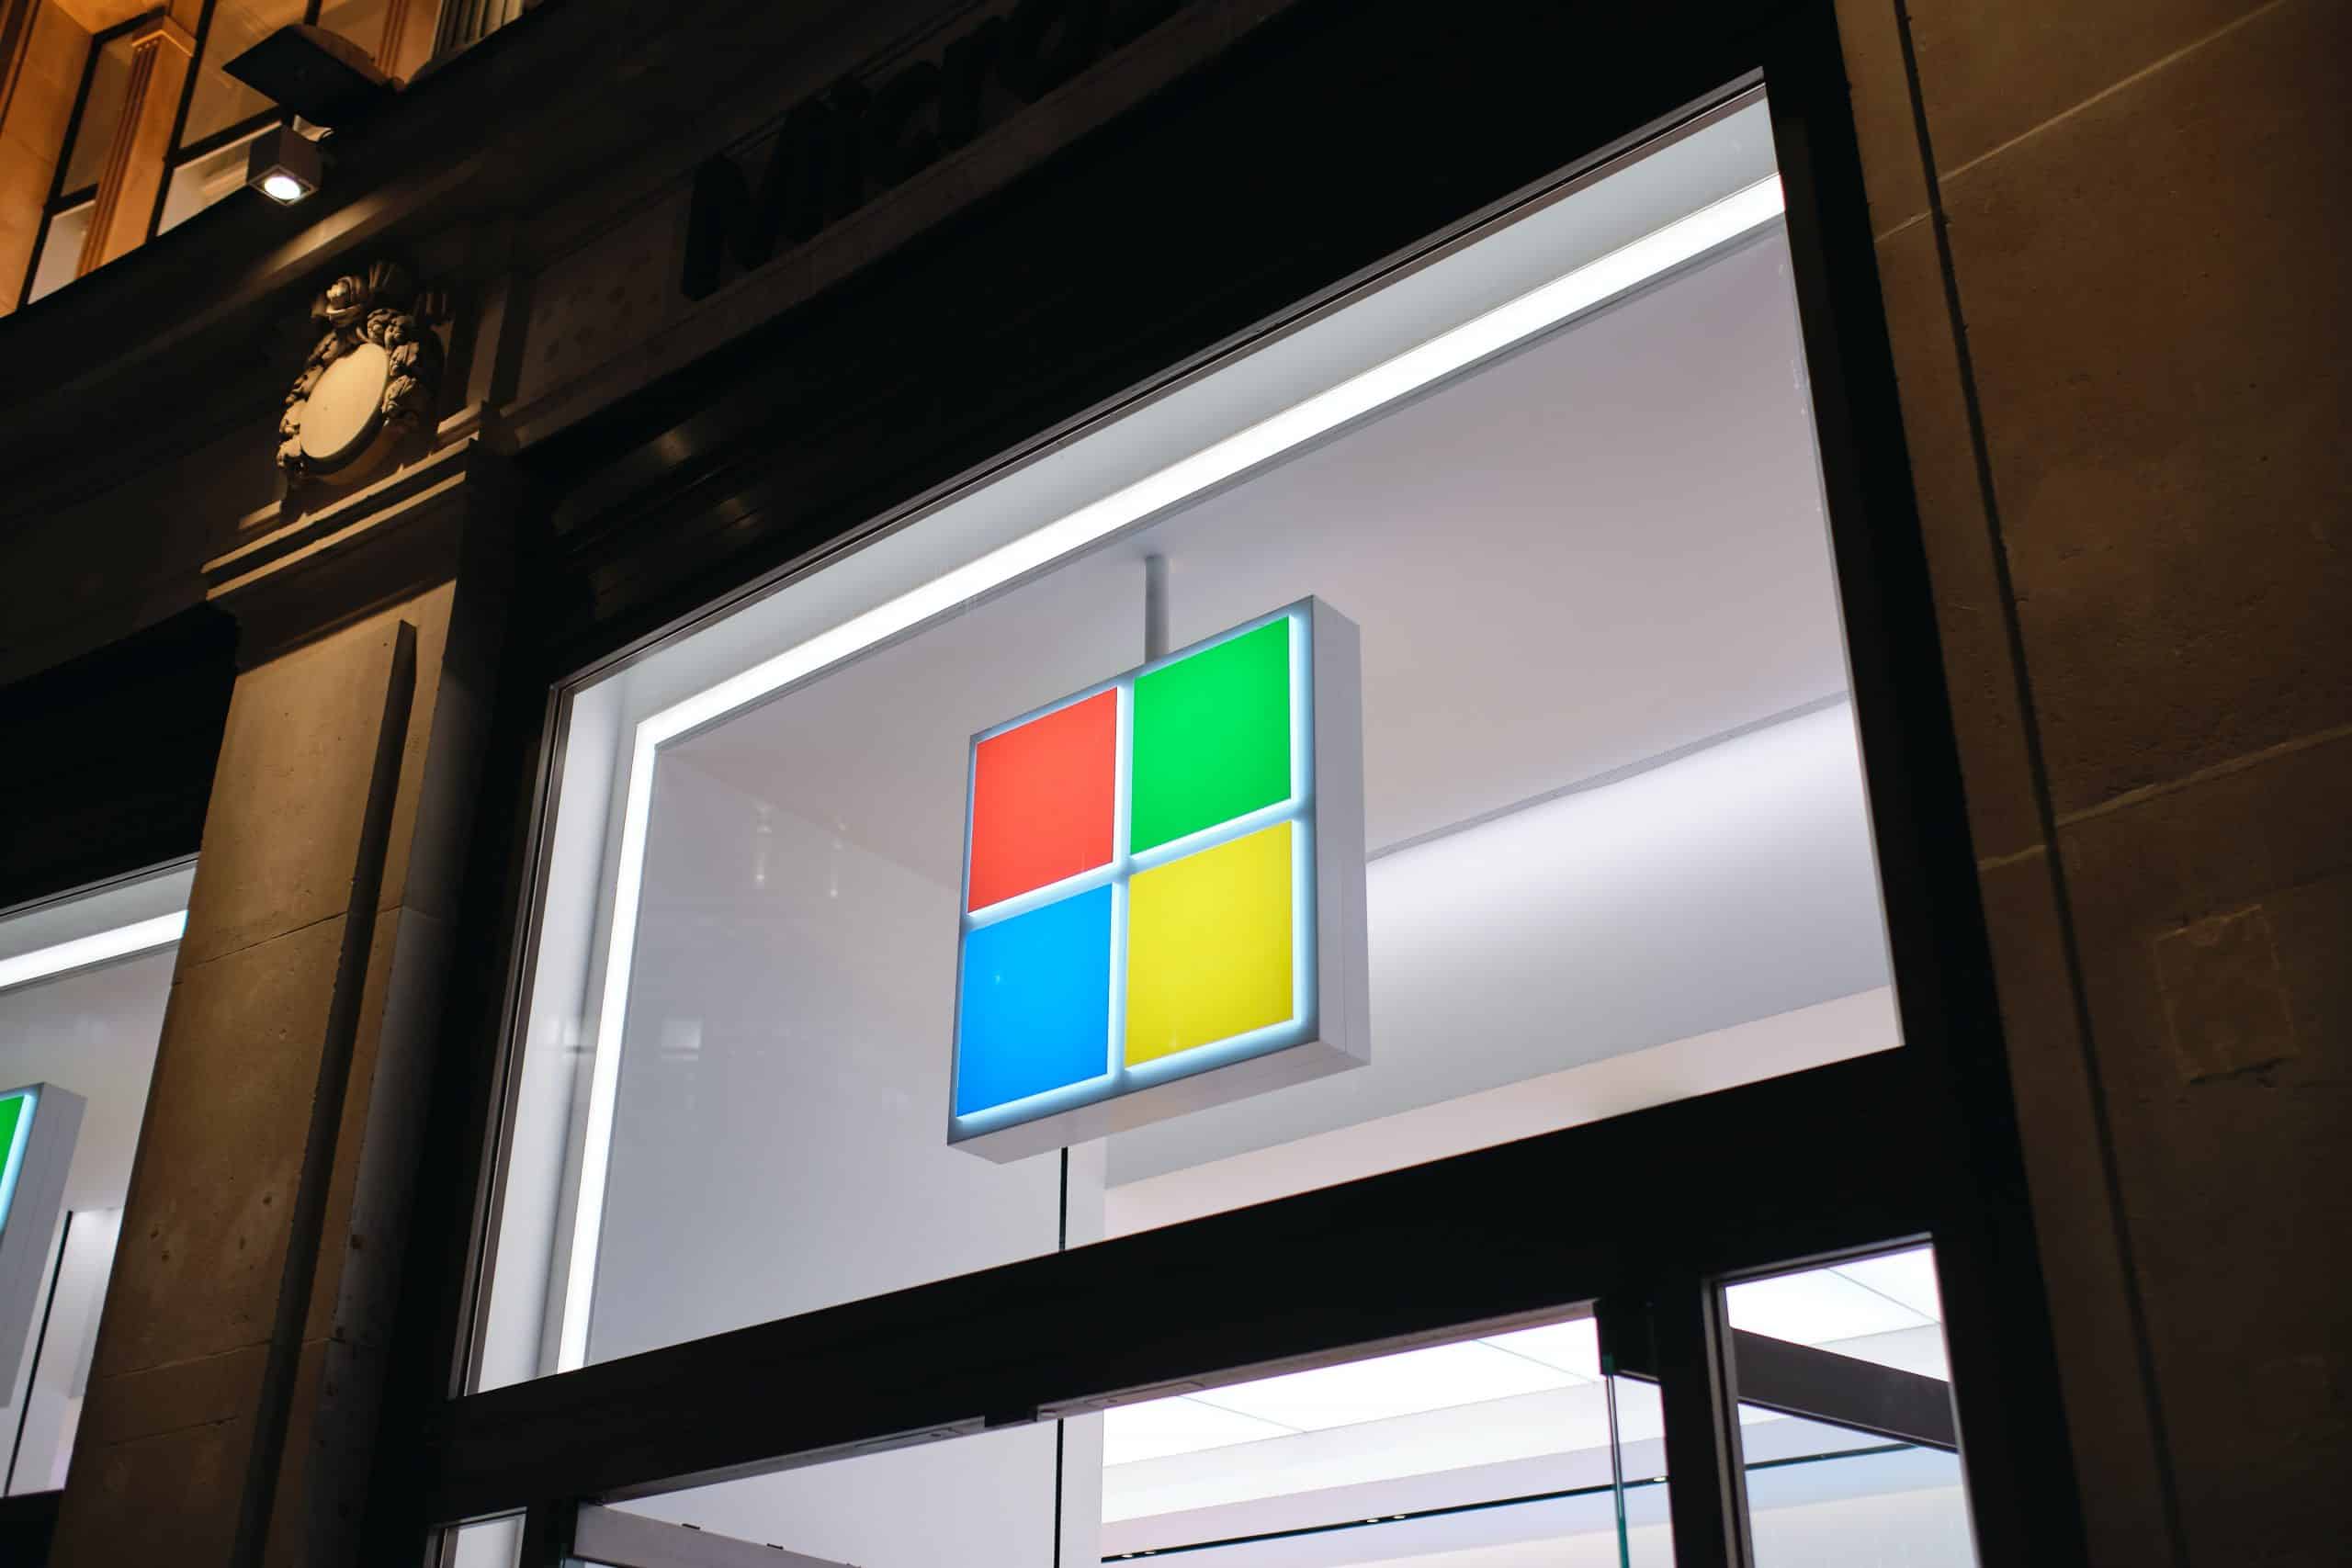 Le logo de Microsoft sur la devanture d'un magasin.